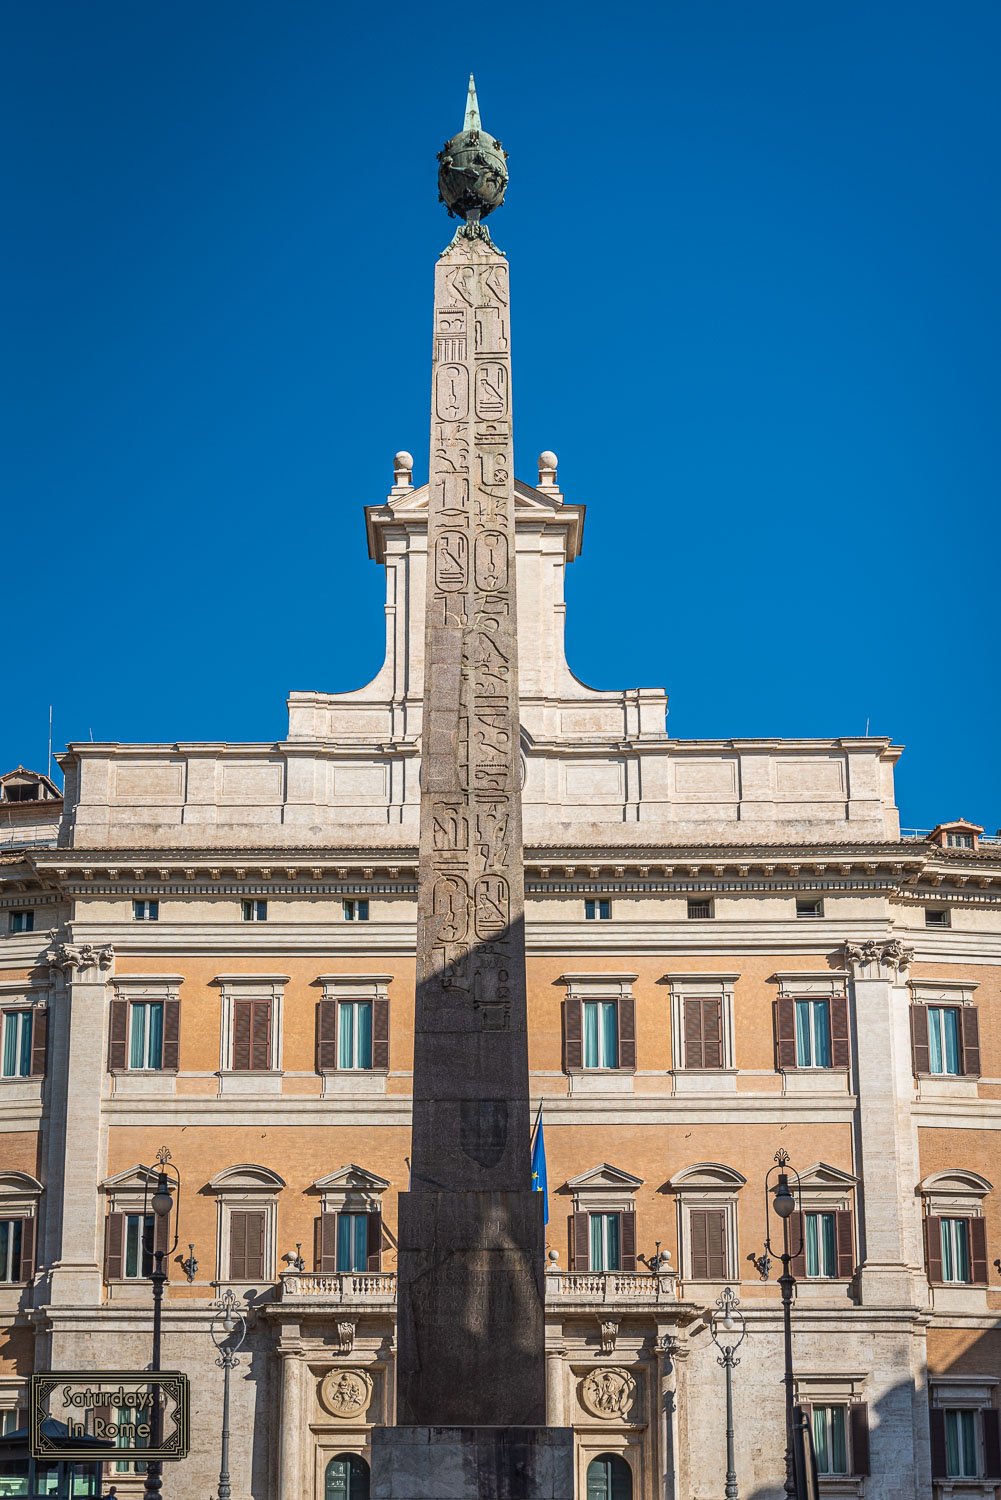 egyptian obelisks in rome - The Obelisk of Montecitorio